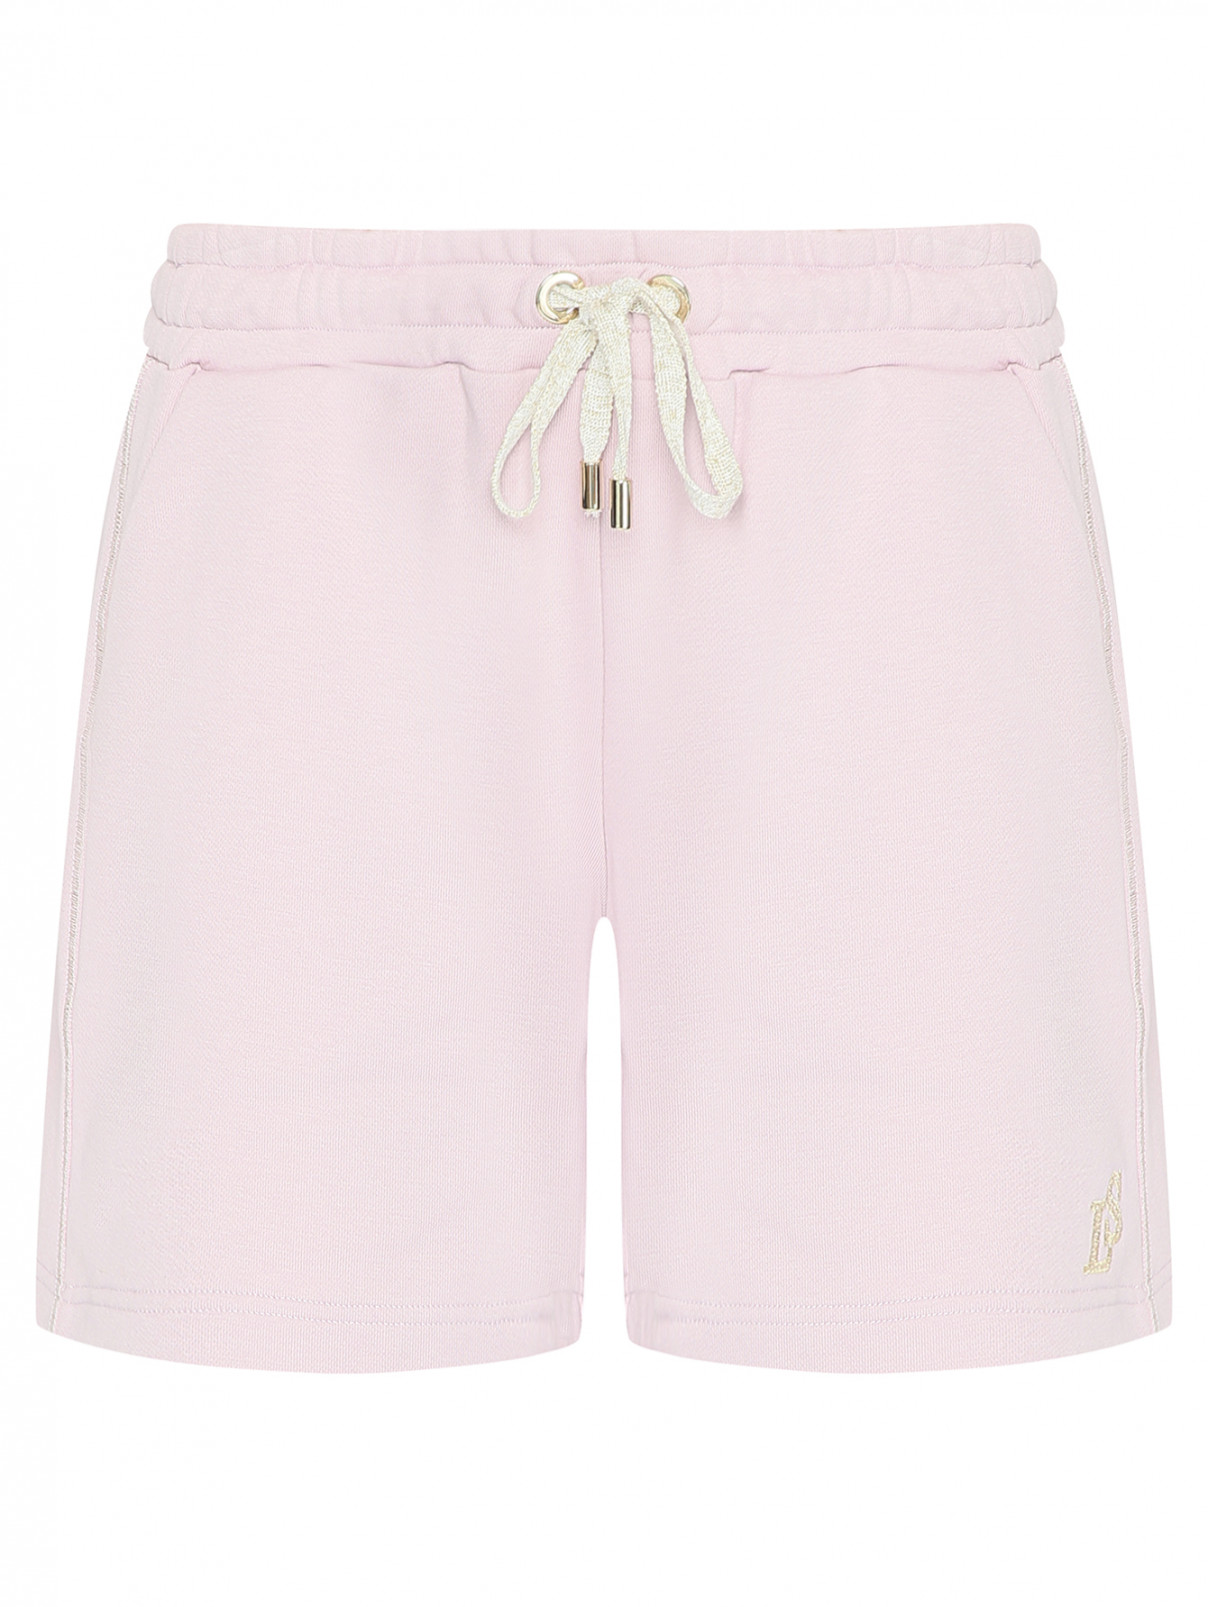 Хлопковые шорты с карманами Luisa Spagnoli  –  Общий вид  – Цвет:  Розовый